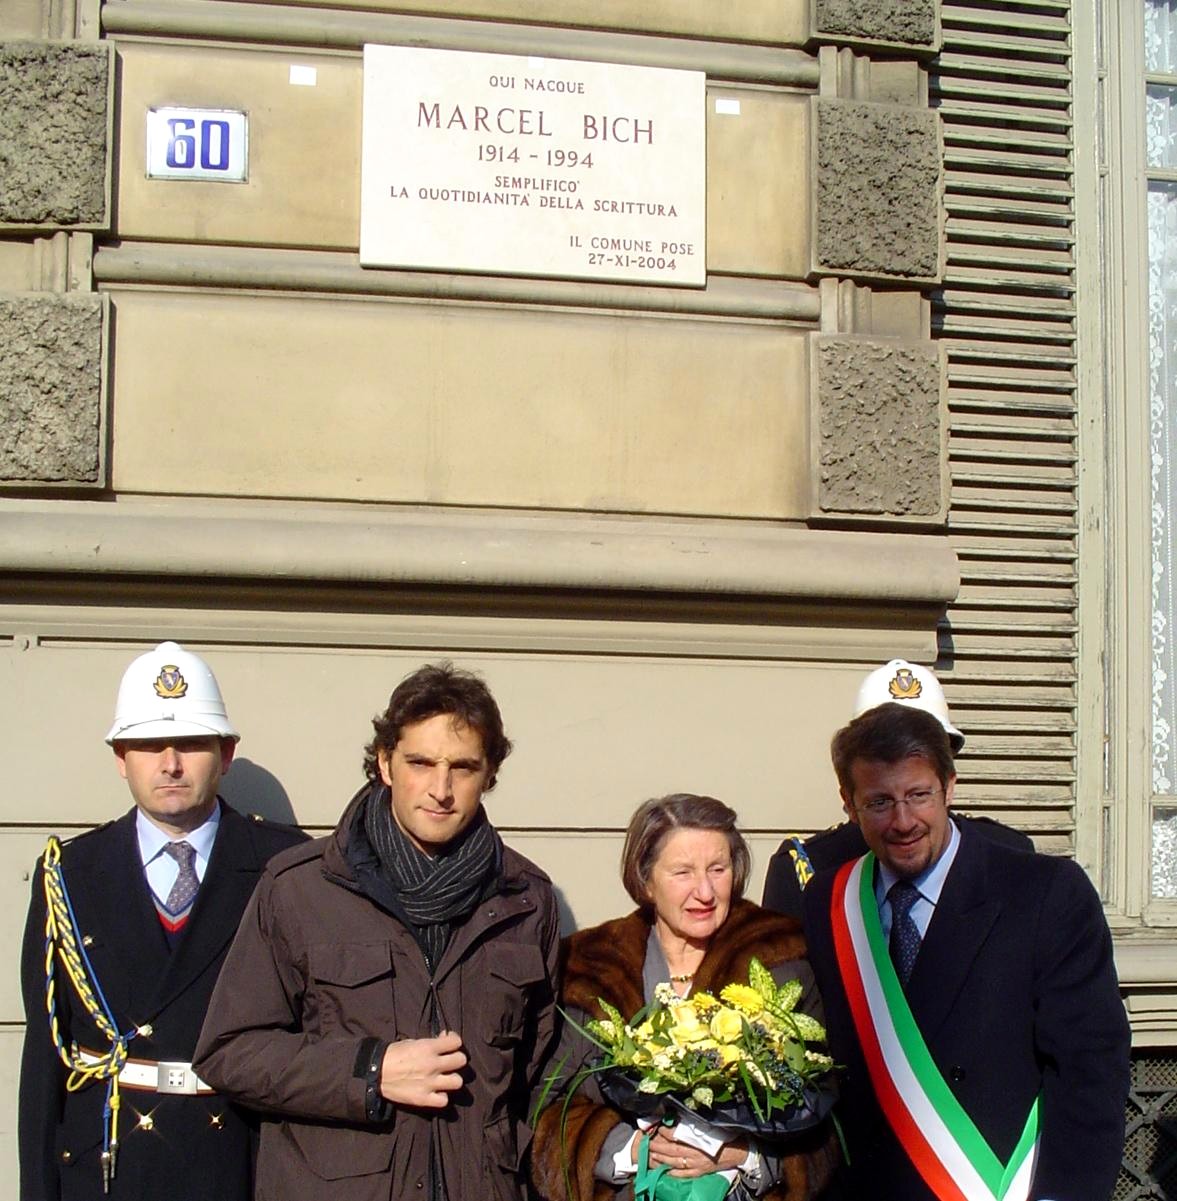 Coppola, la baronessa Bich e Marino sotto la targa dedicata a Marcel Bich